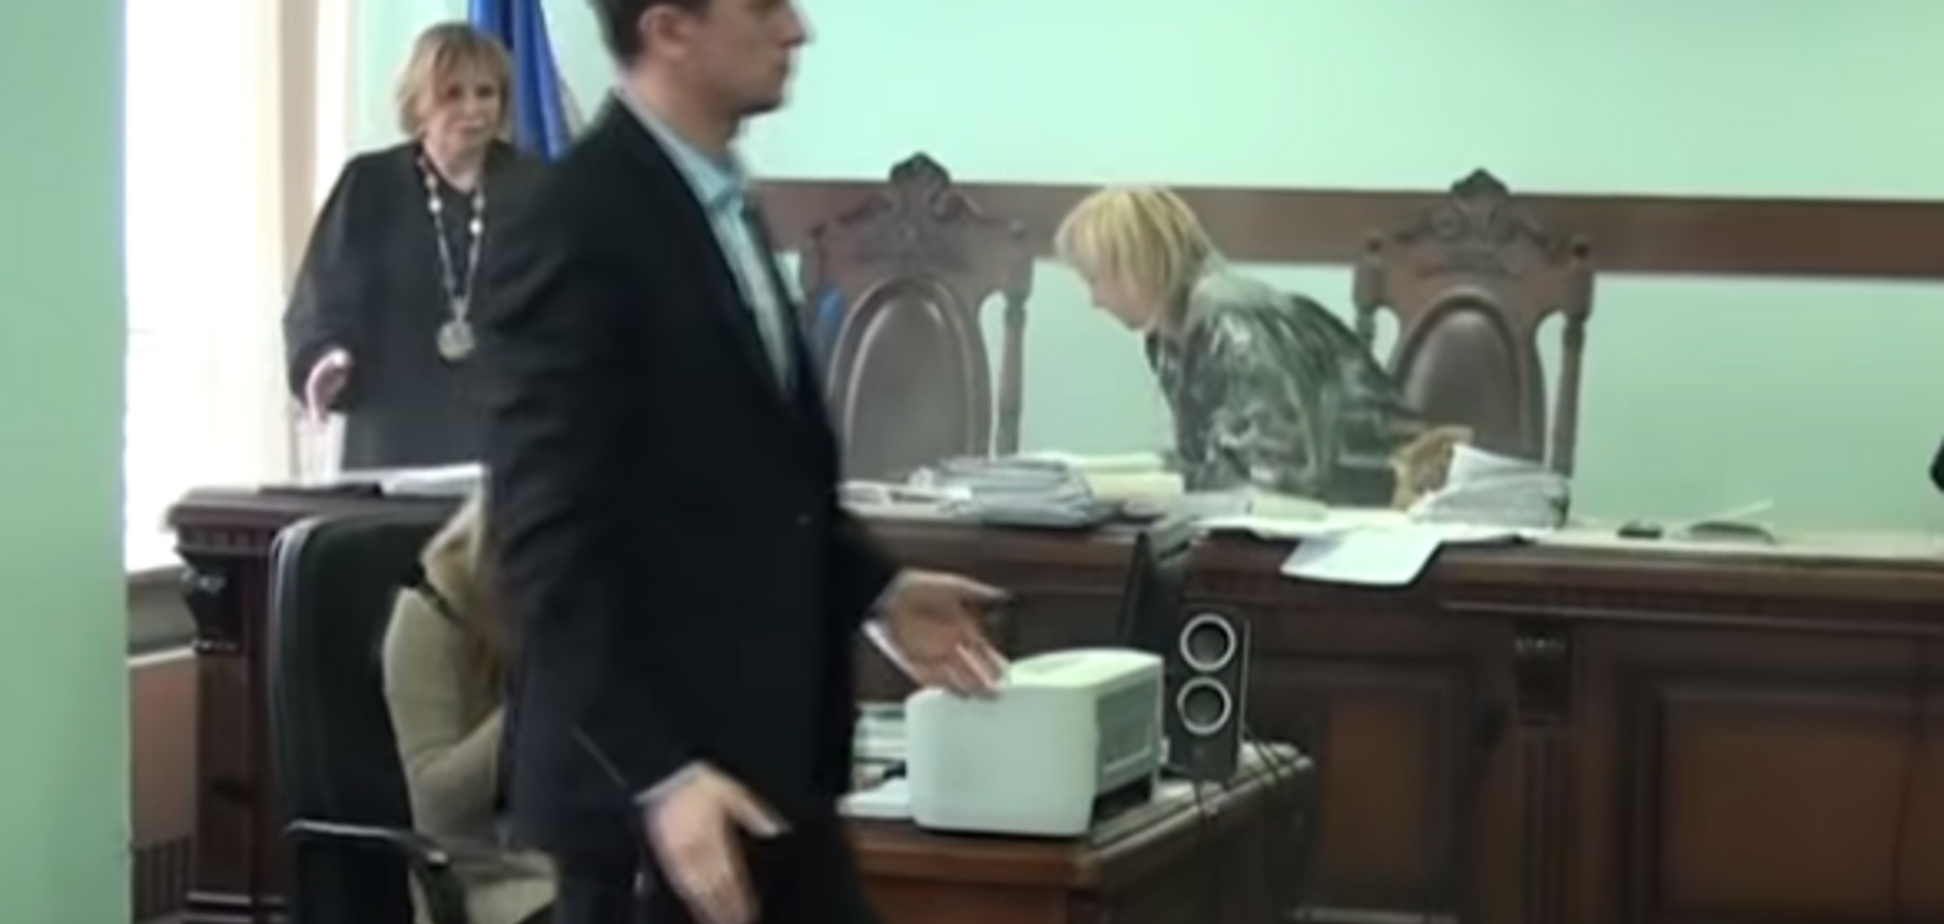 'Мы должны бороться': в Киеве судью обсыпали мукой на заседании